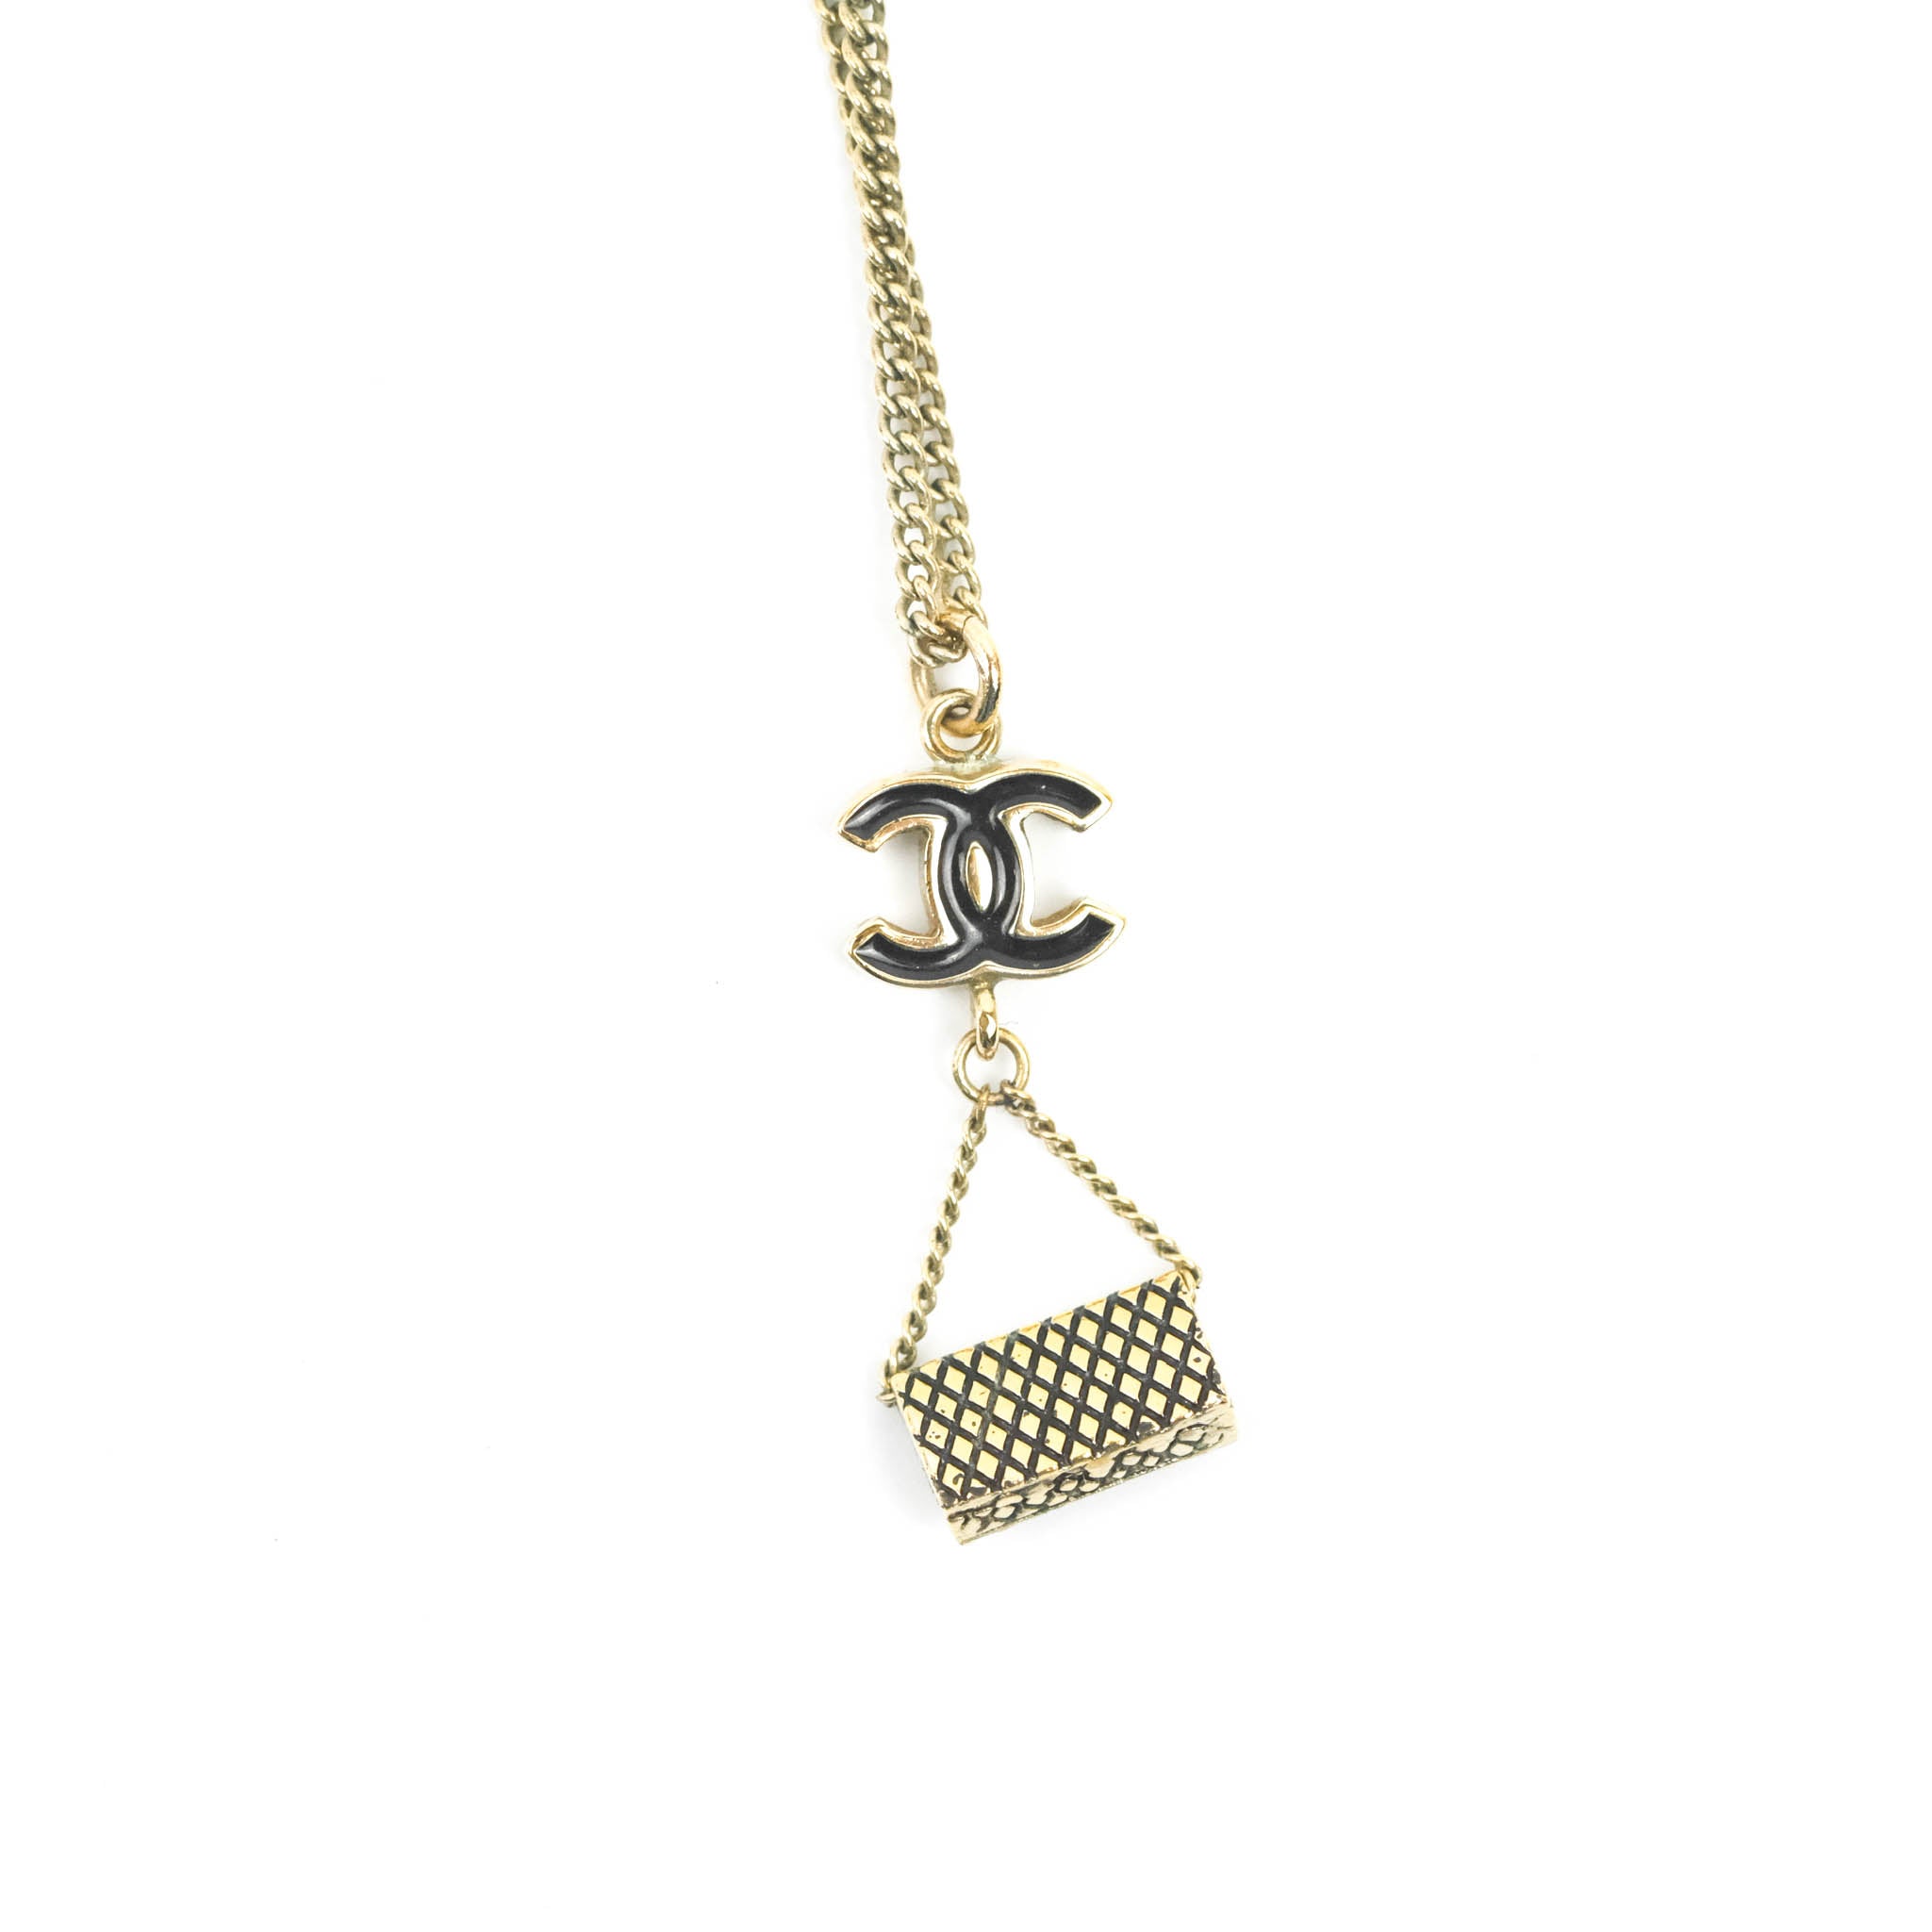 Chanel CC Black Enamel Flap Bag Charm Pendant Necklace Gold Tone